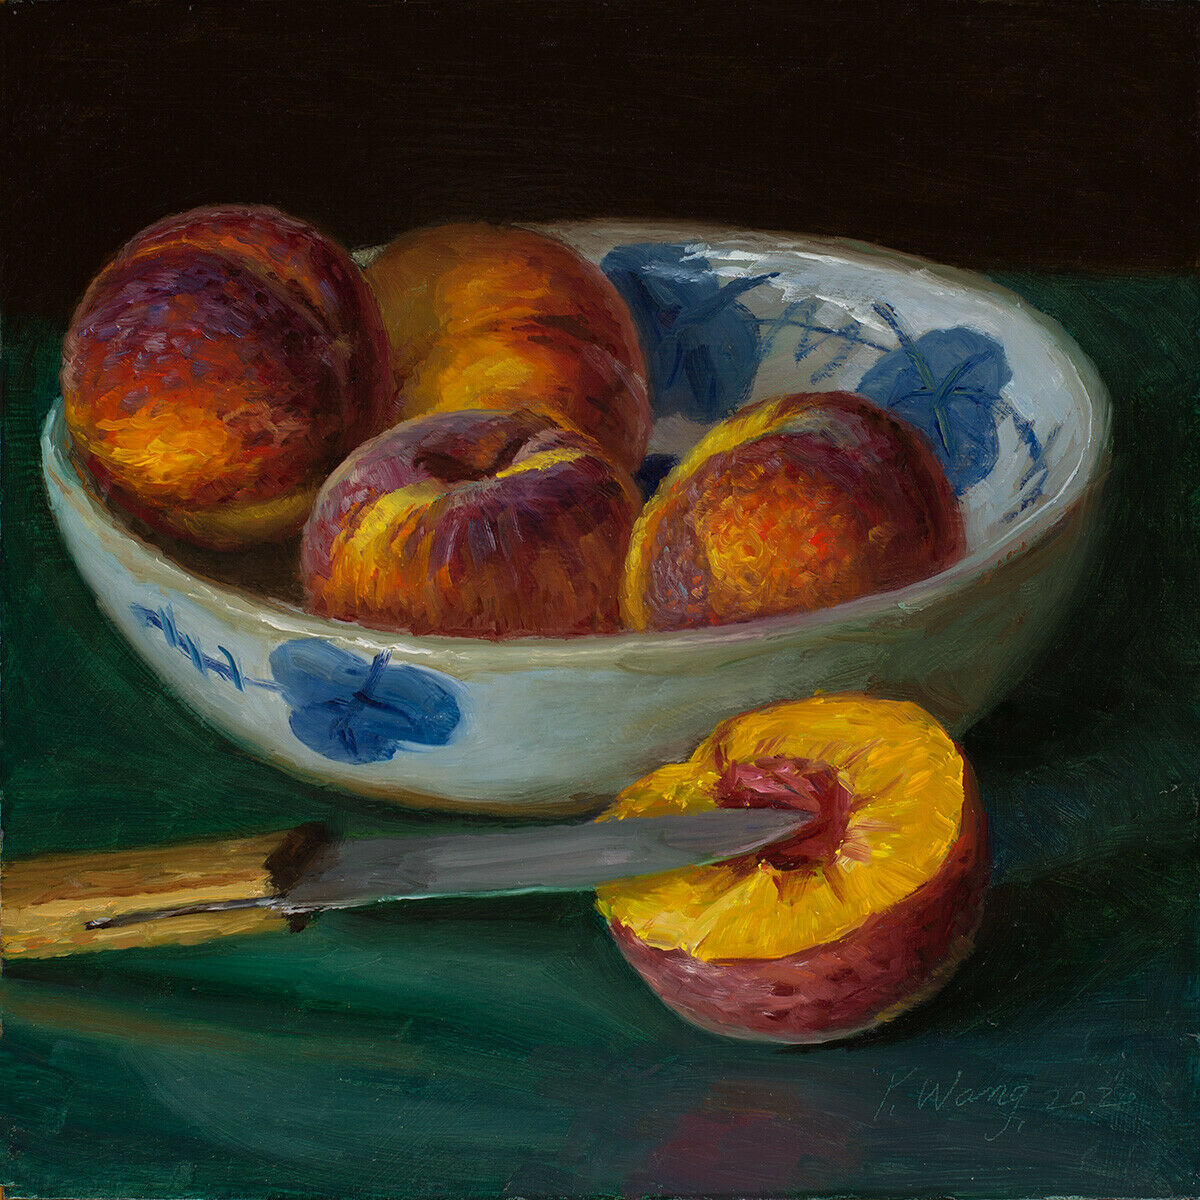  Peaches in a bowl